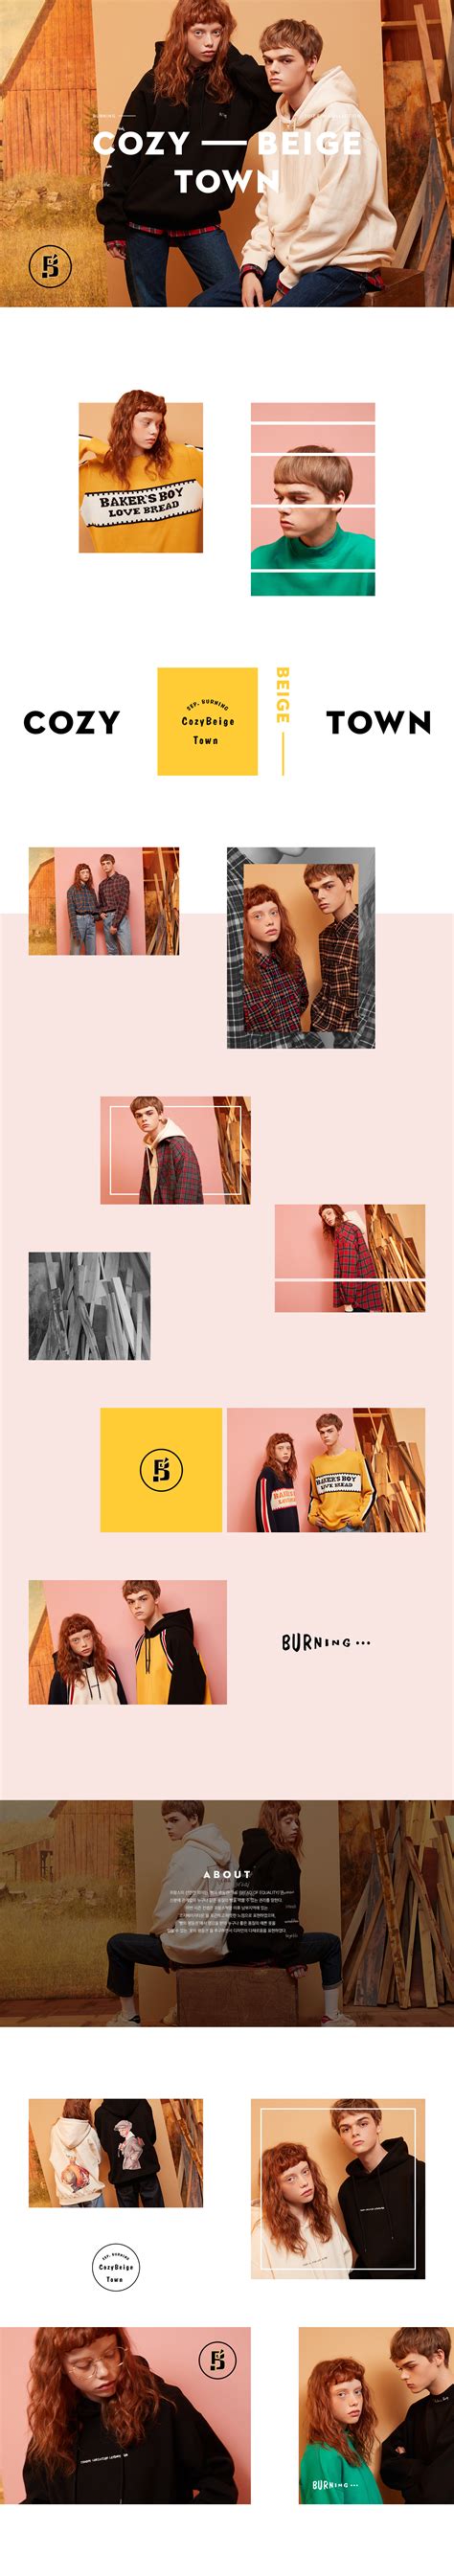 W컨셉 공식사이트, 유니크한 디자이너 브랜드 편집샵 | Web layout design, Fashion layout, Layout design